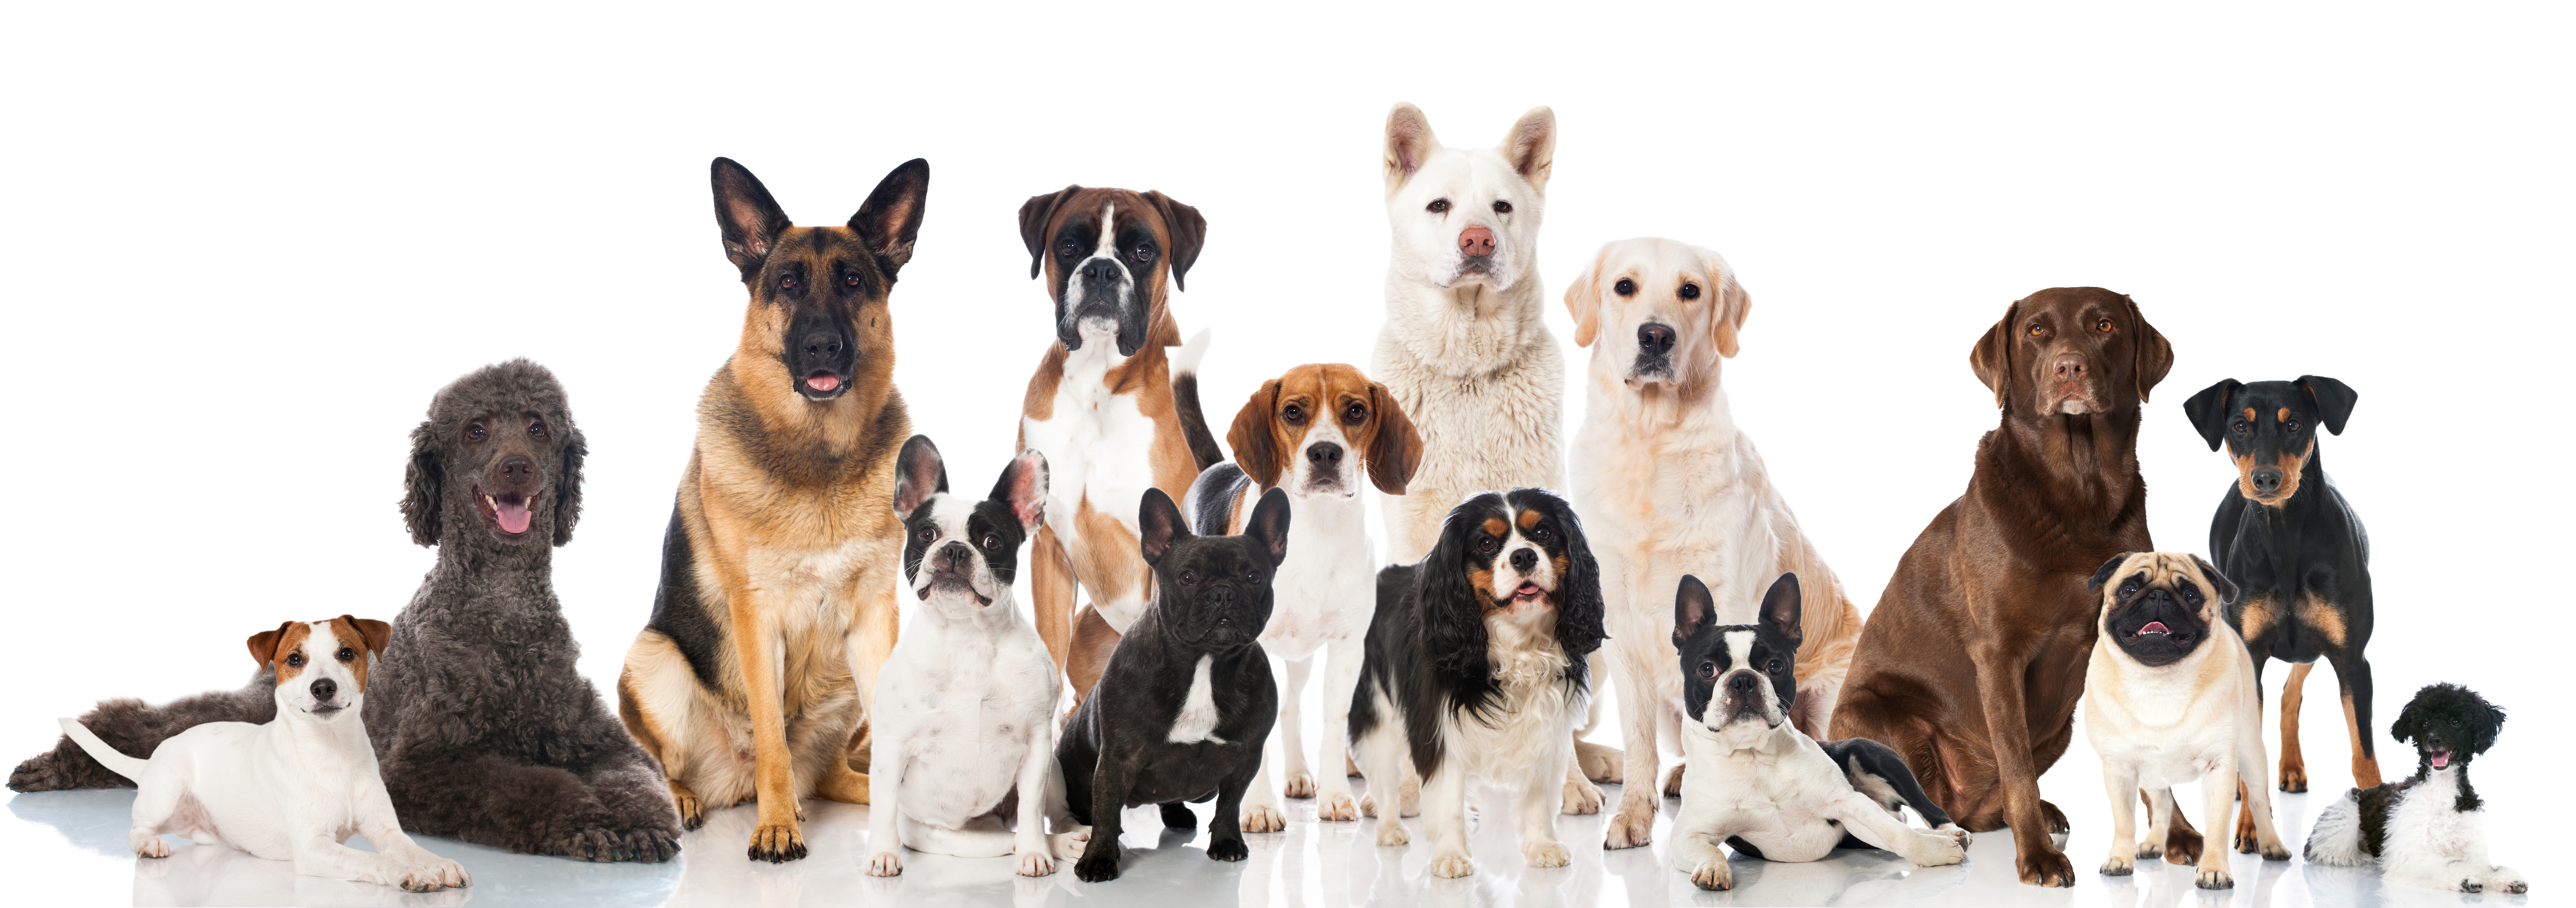 Viele verschiedene Hunderassen vor weißen Hintergrund